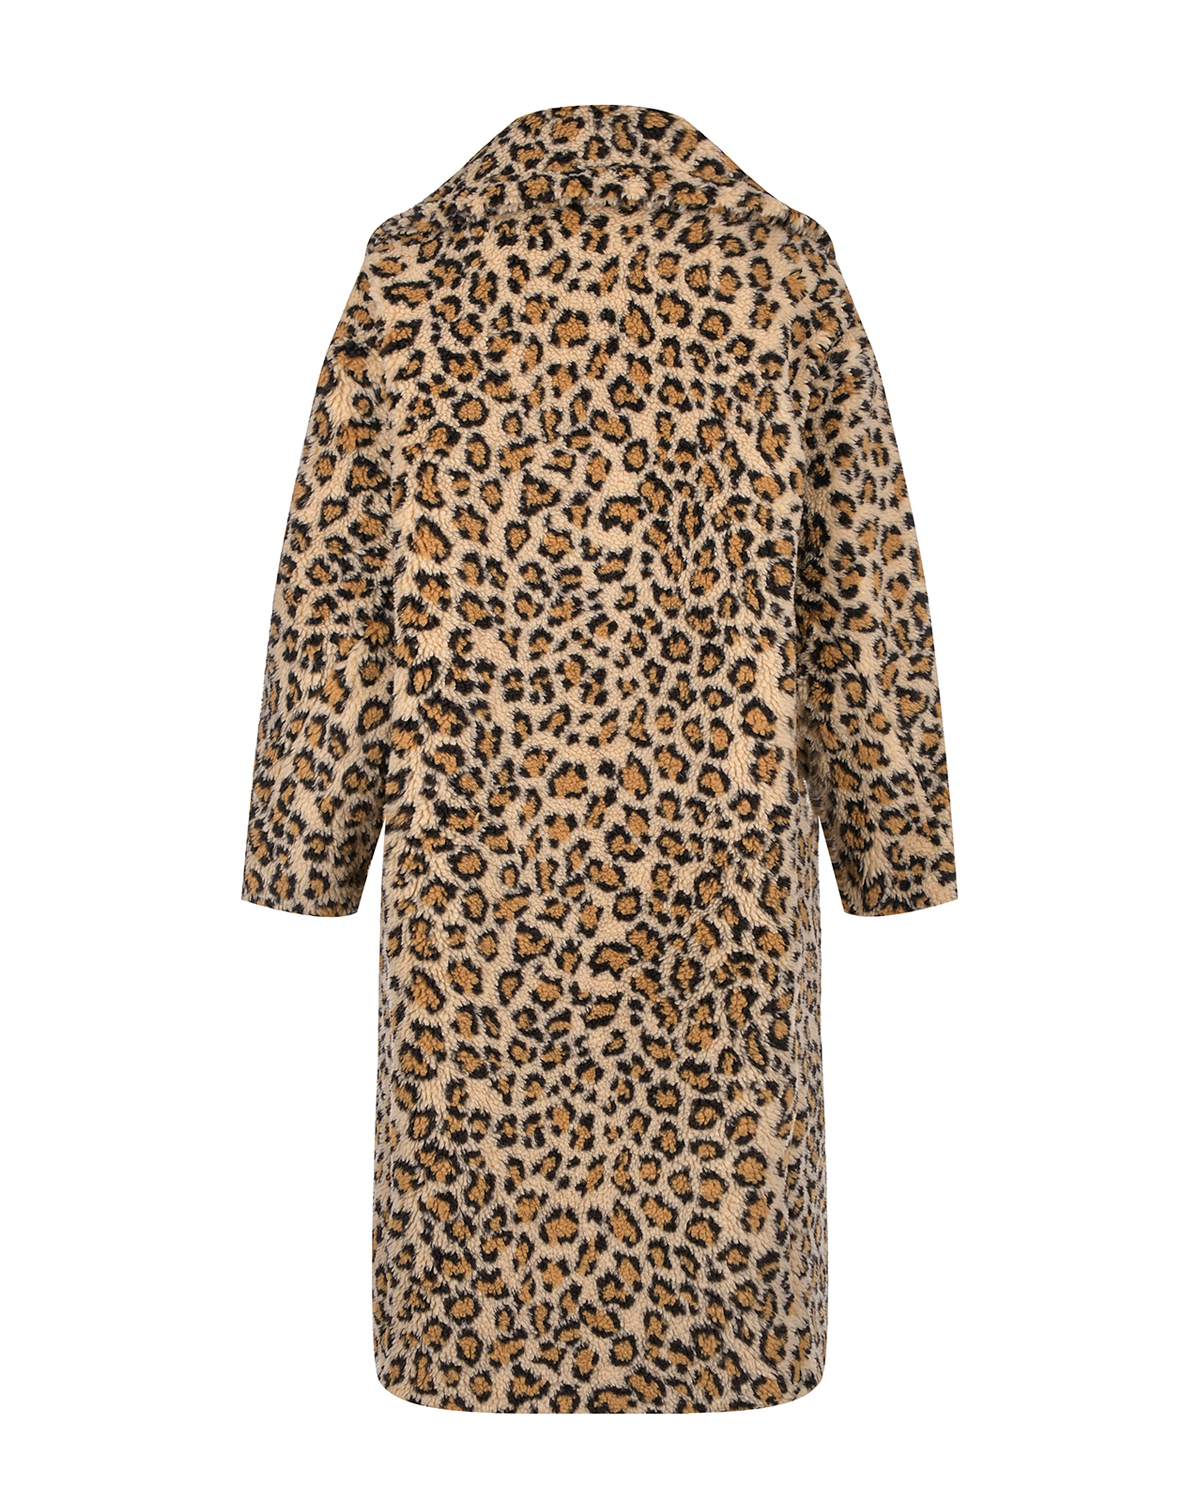 Пальто из эко-меха с леопардовым принтом Forte dei Marmi Couture, размер 36, цвет нет цвета - фото 4